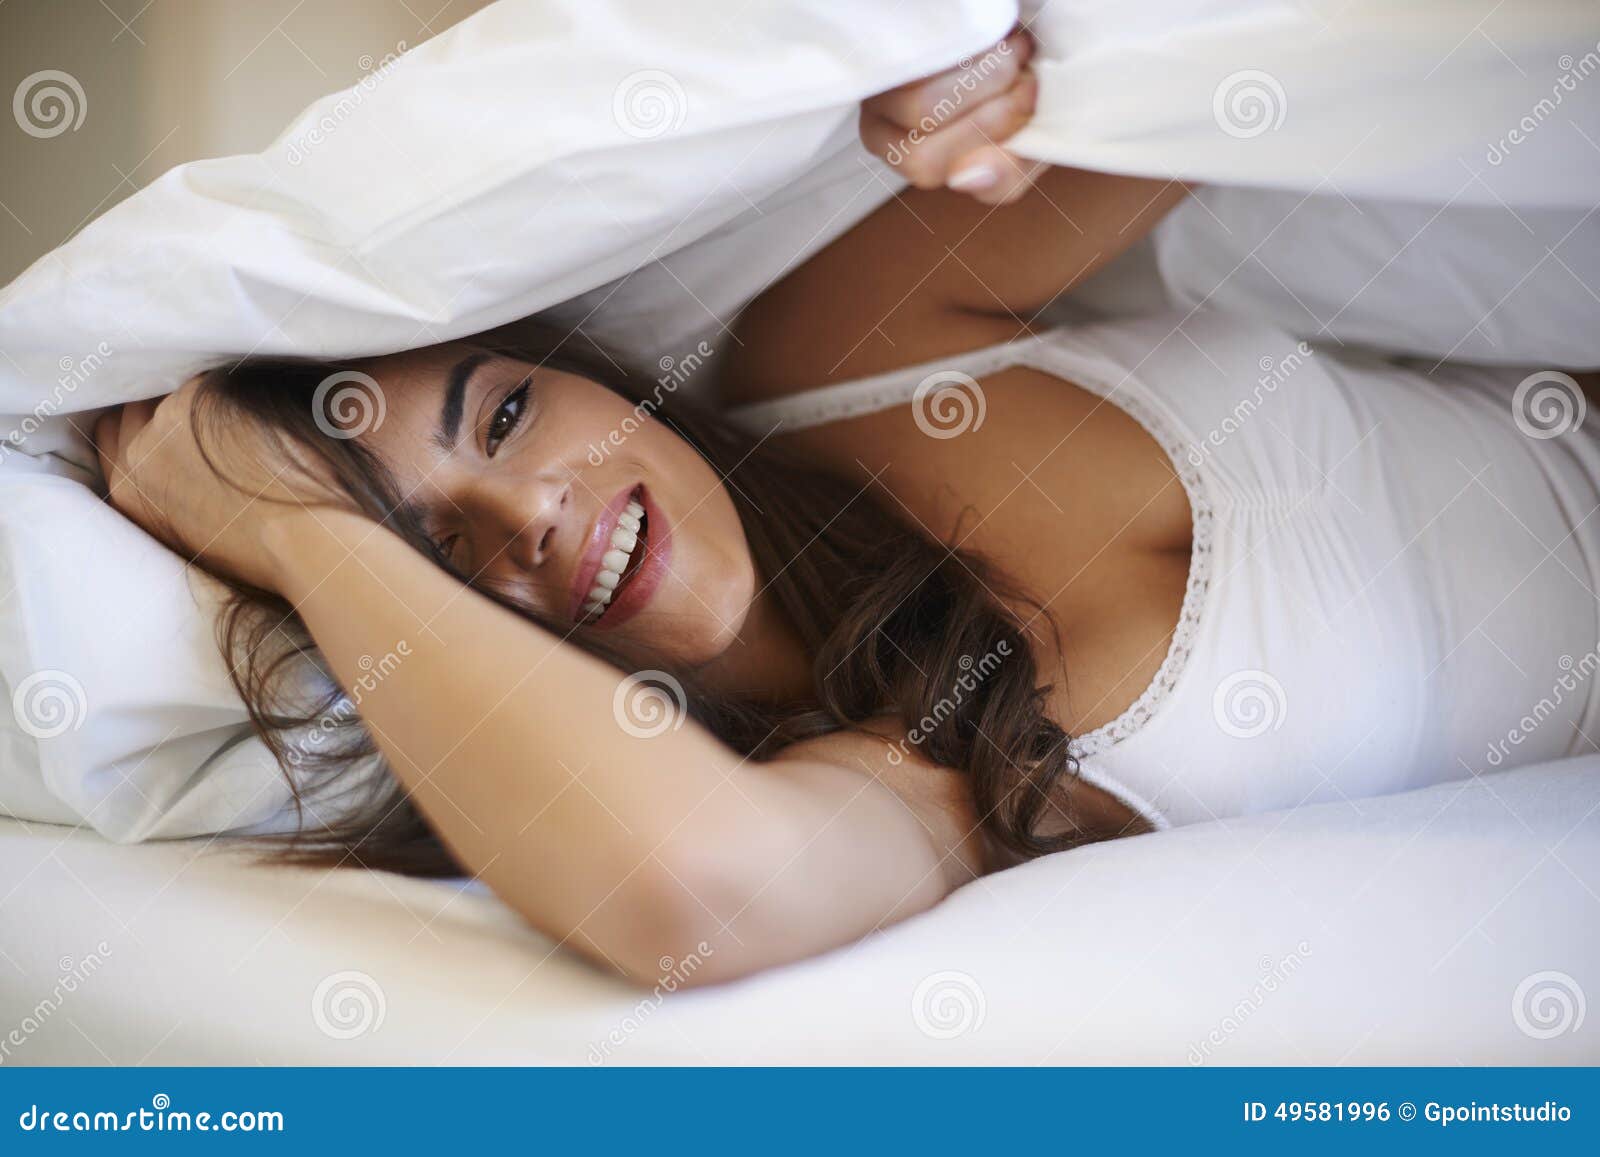 Удовольствие женщины в постели